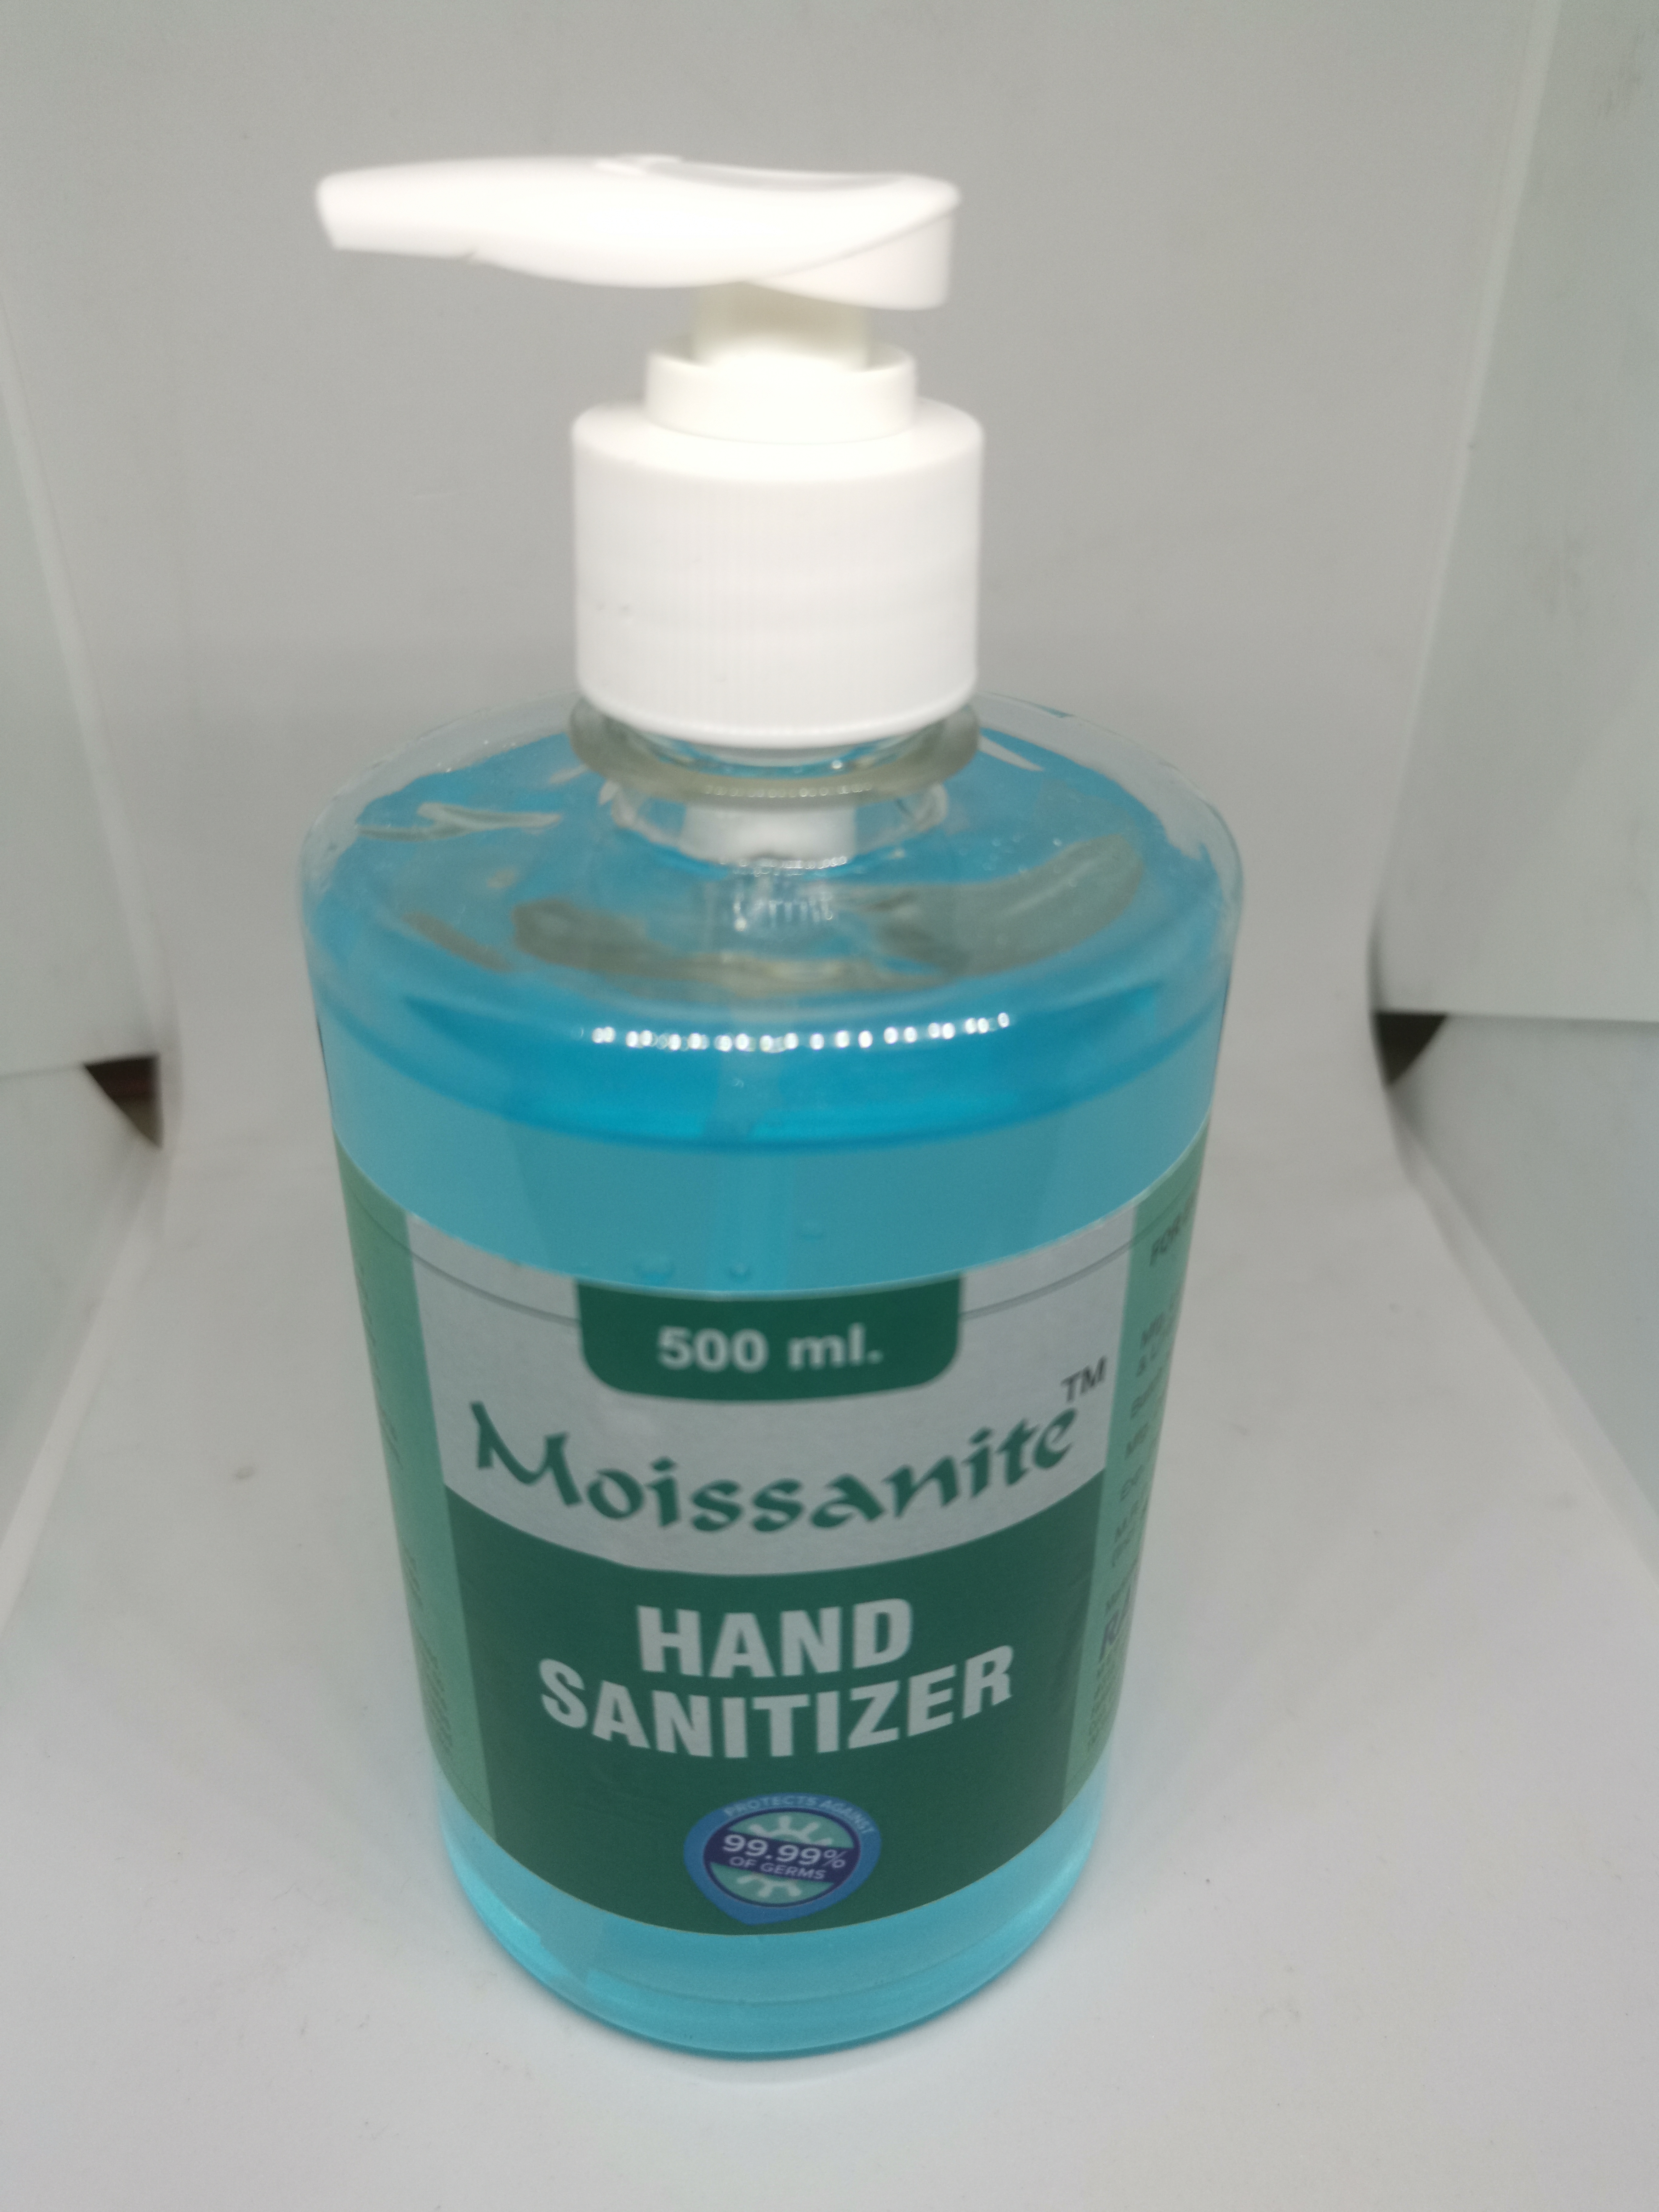 Moissanite Hand Sanitizer - 100, 200, 500 ml